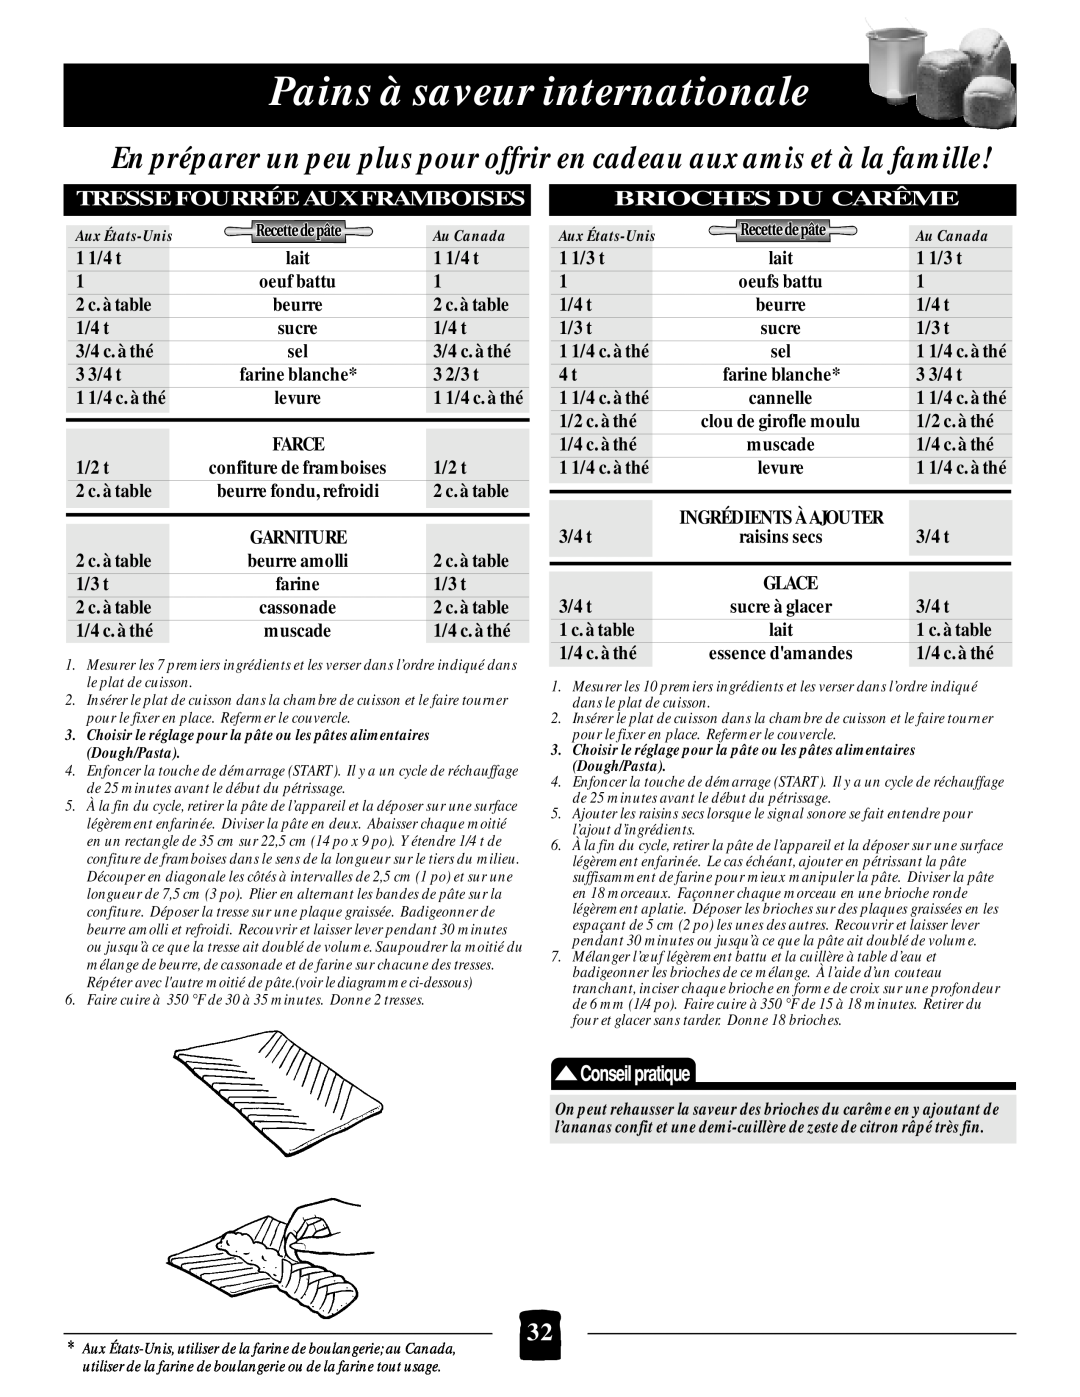 Black & Decker B1650 manual Pains à saveur internationale, Tresse Fourrée Aux Framboises, Brioches Du Carême 